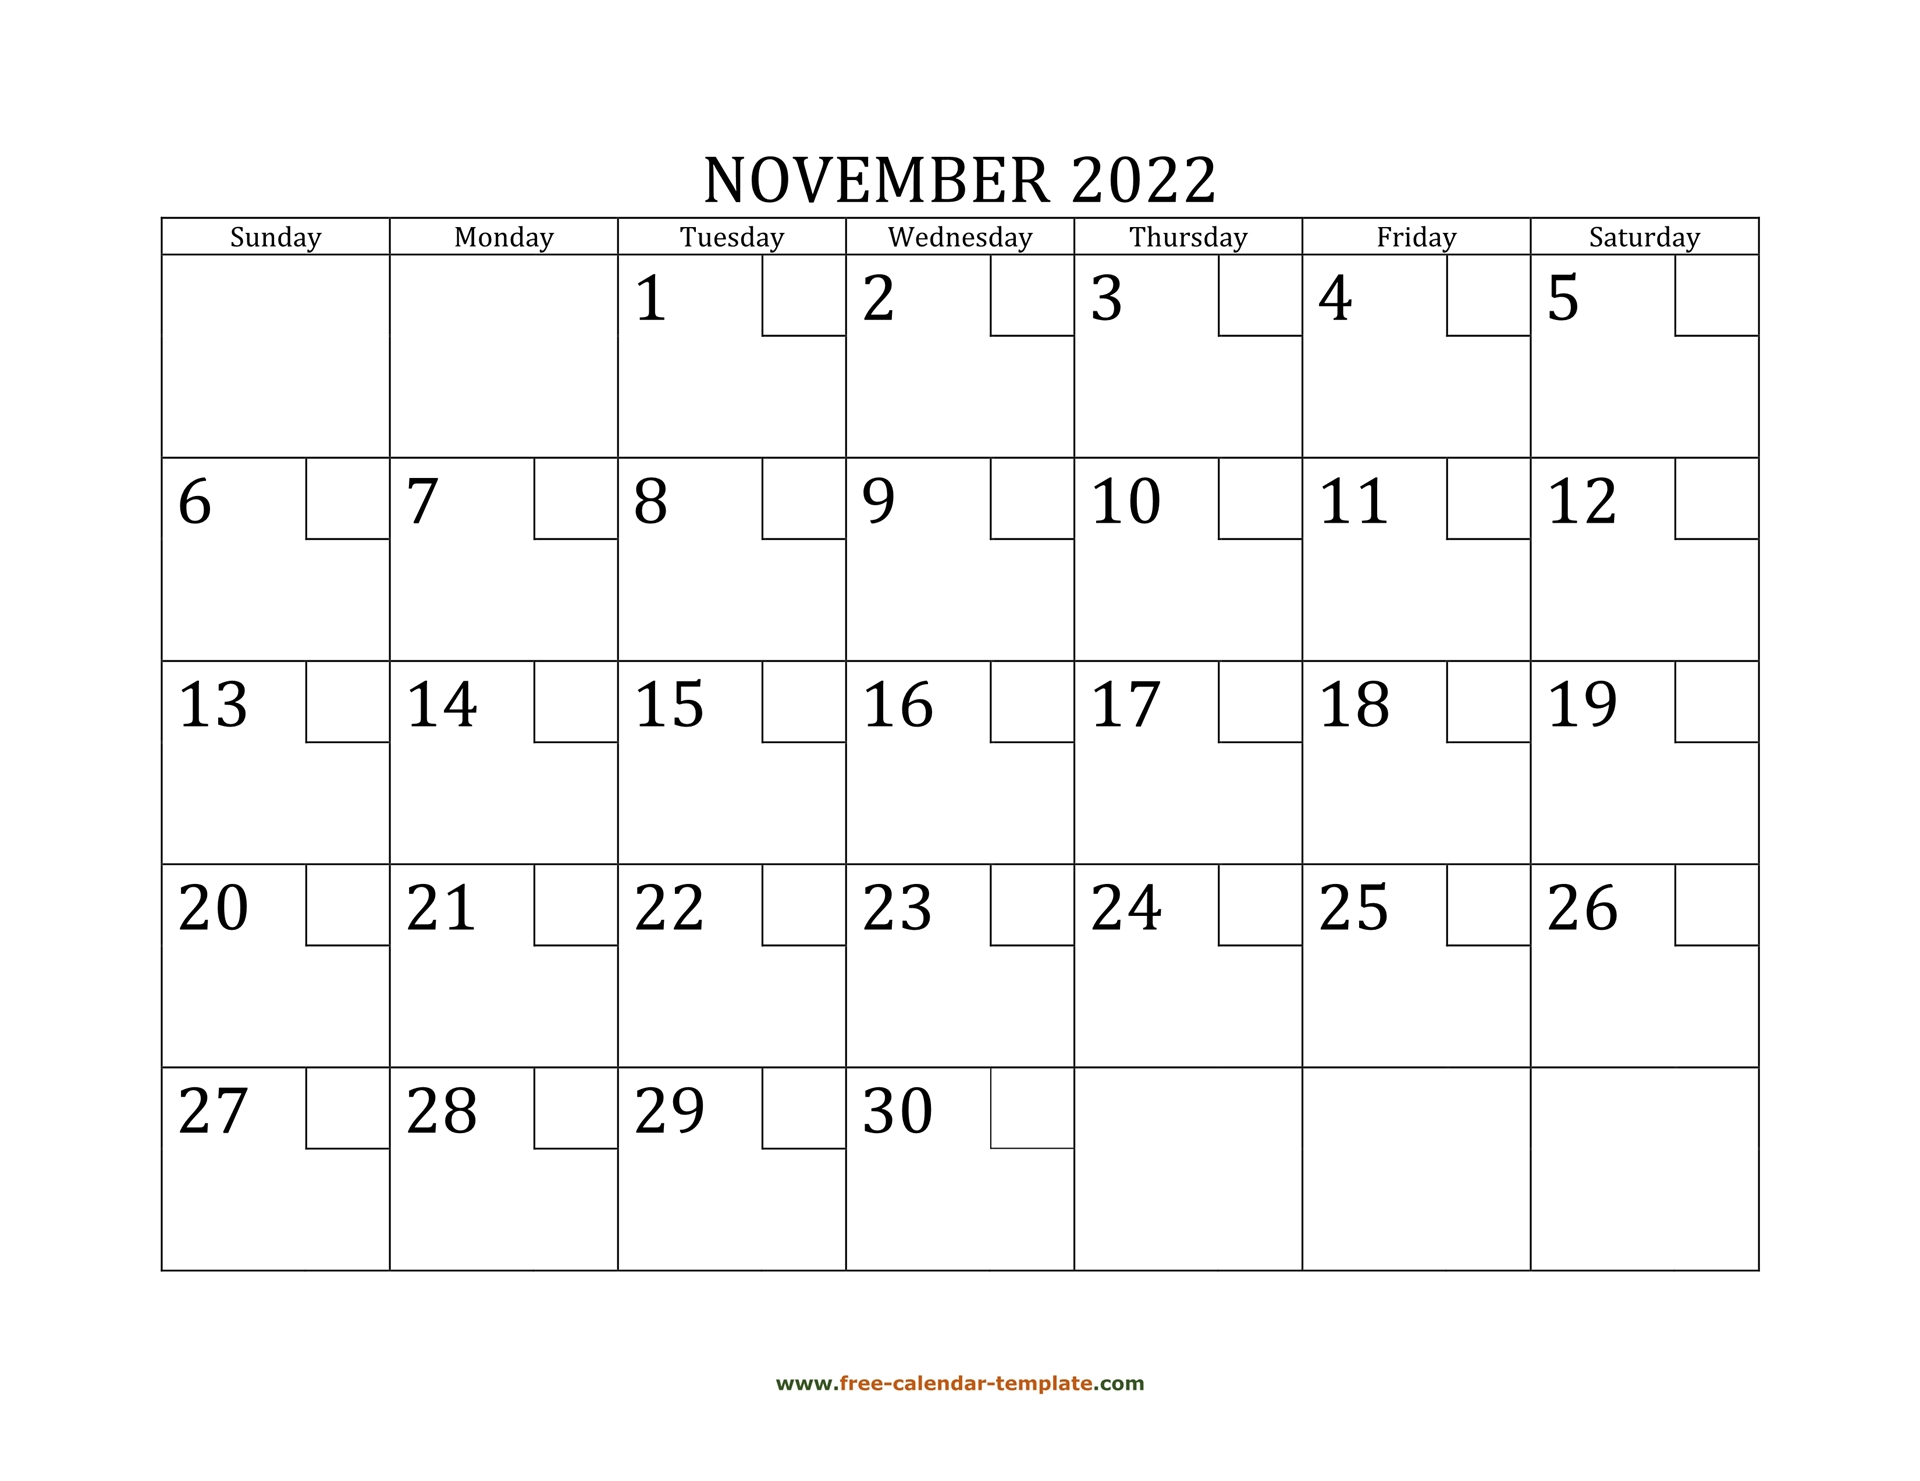 Collect November 2022 Islamic Calendar